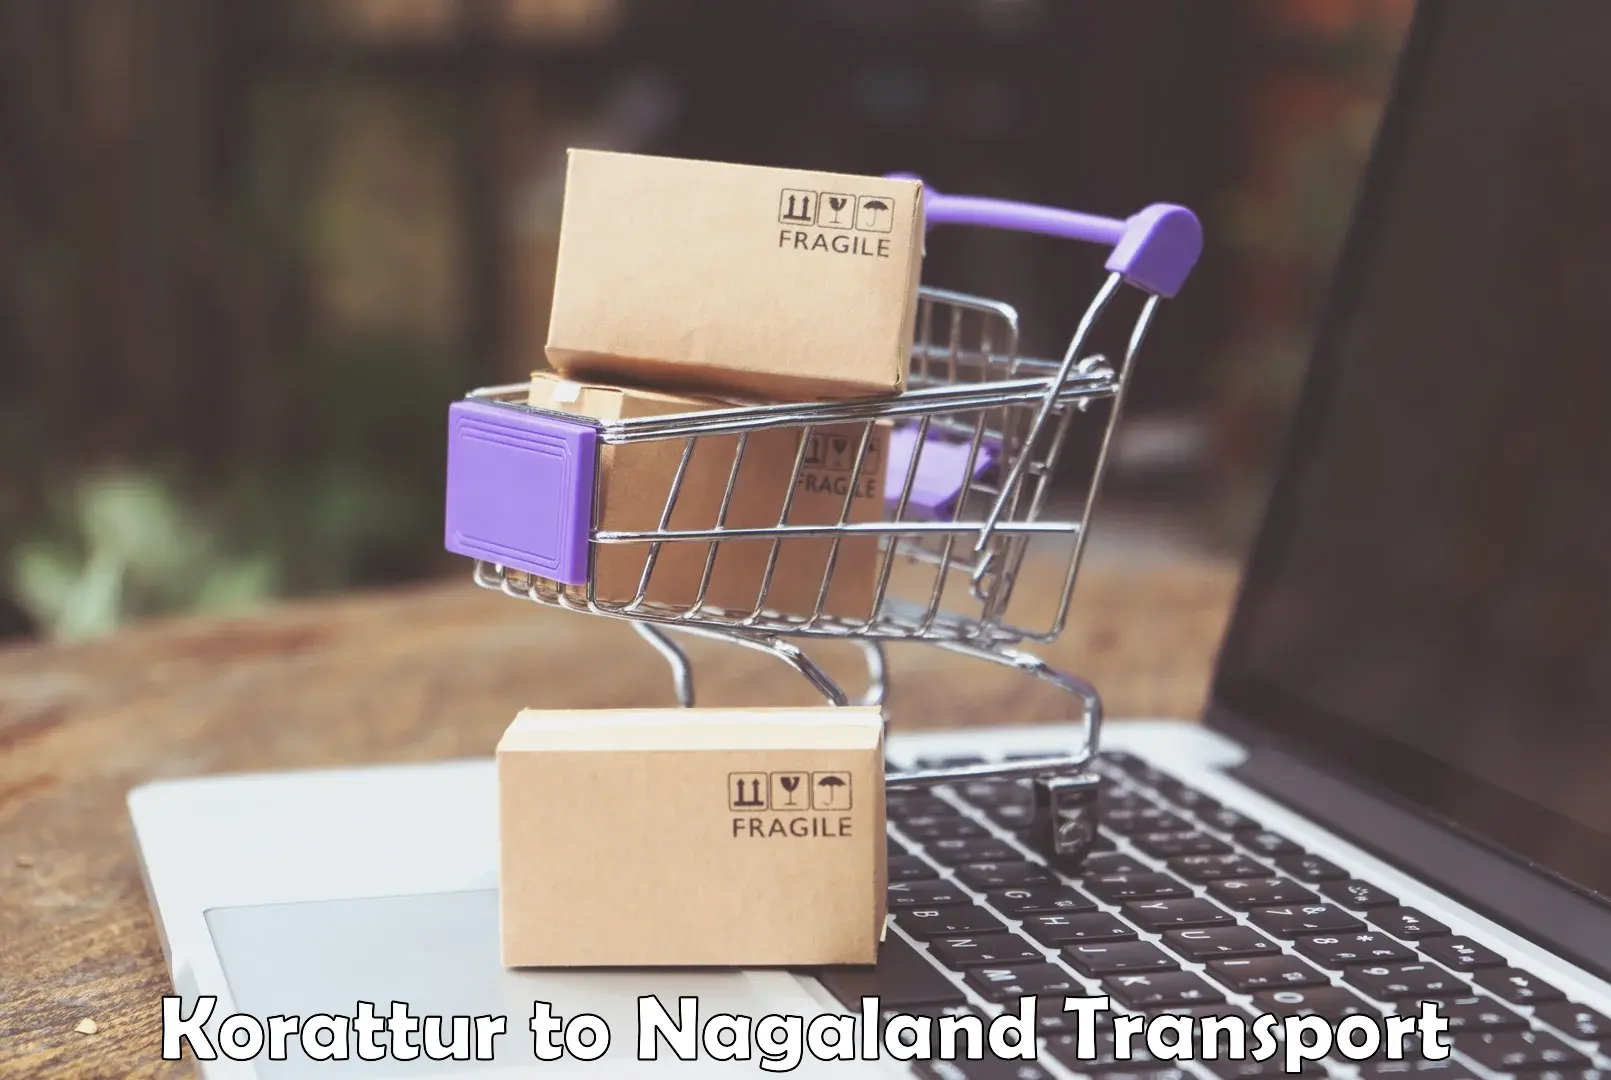 Road transport online services Korattur to NIT Nagaland